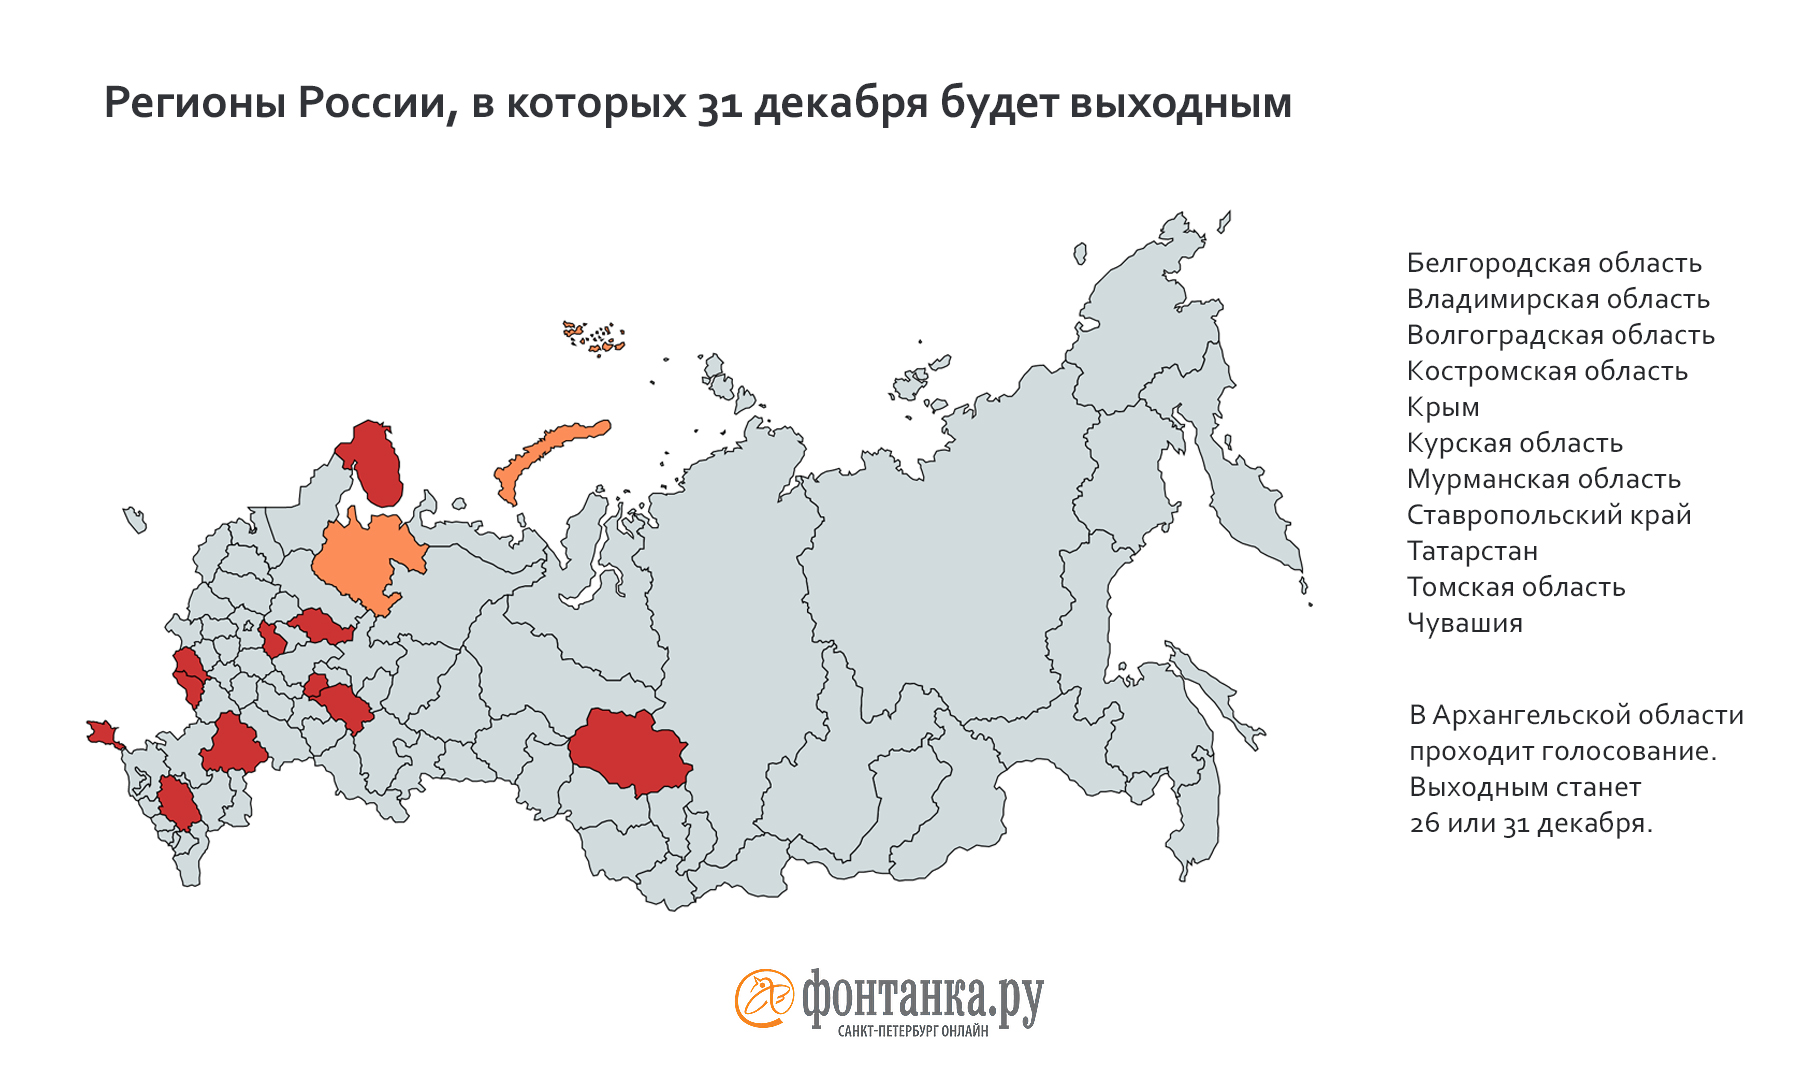 13 регионов России приблизили Новый год на 1 день. Брянска на праздничной карте пока нет